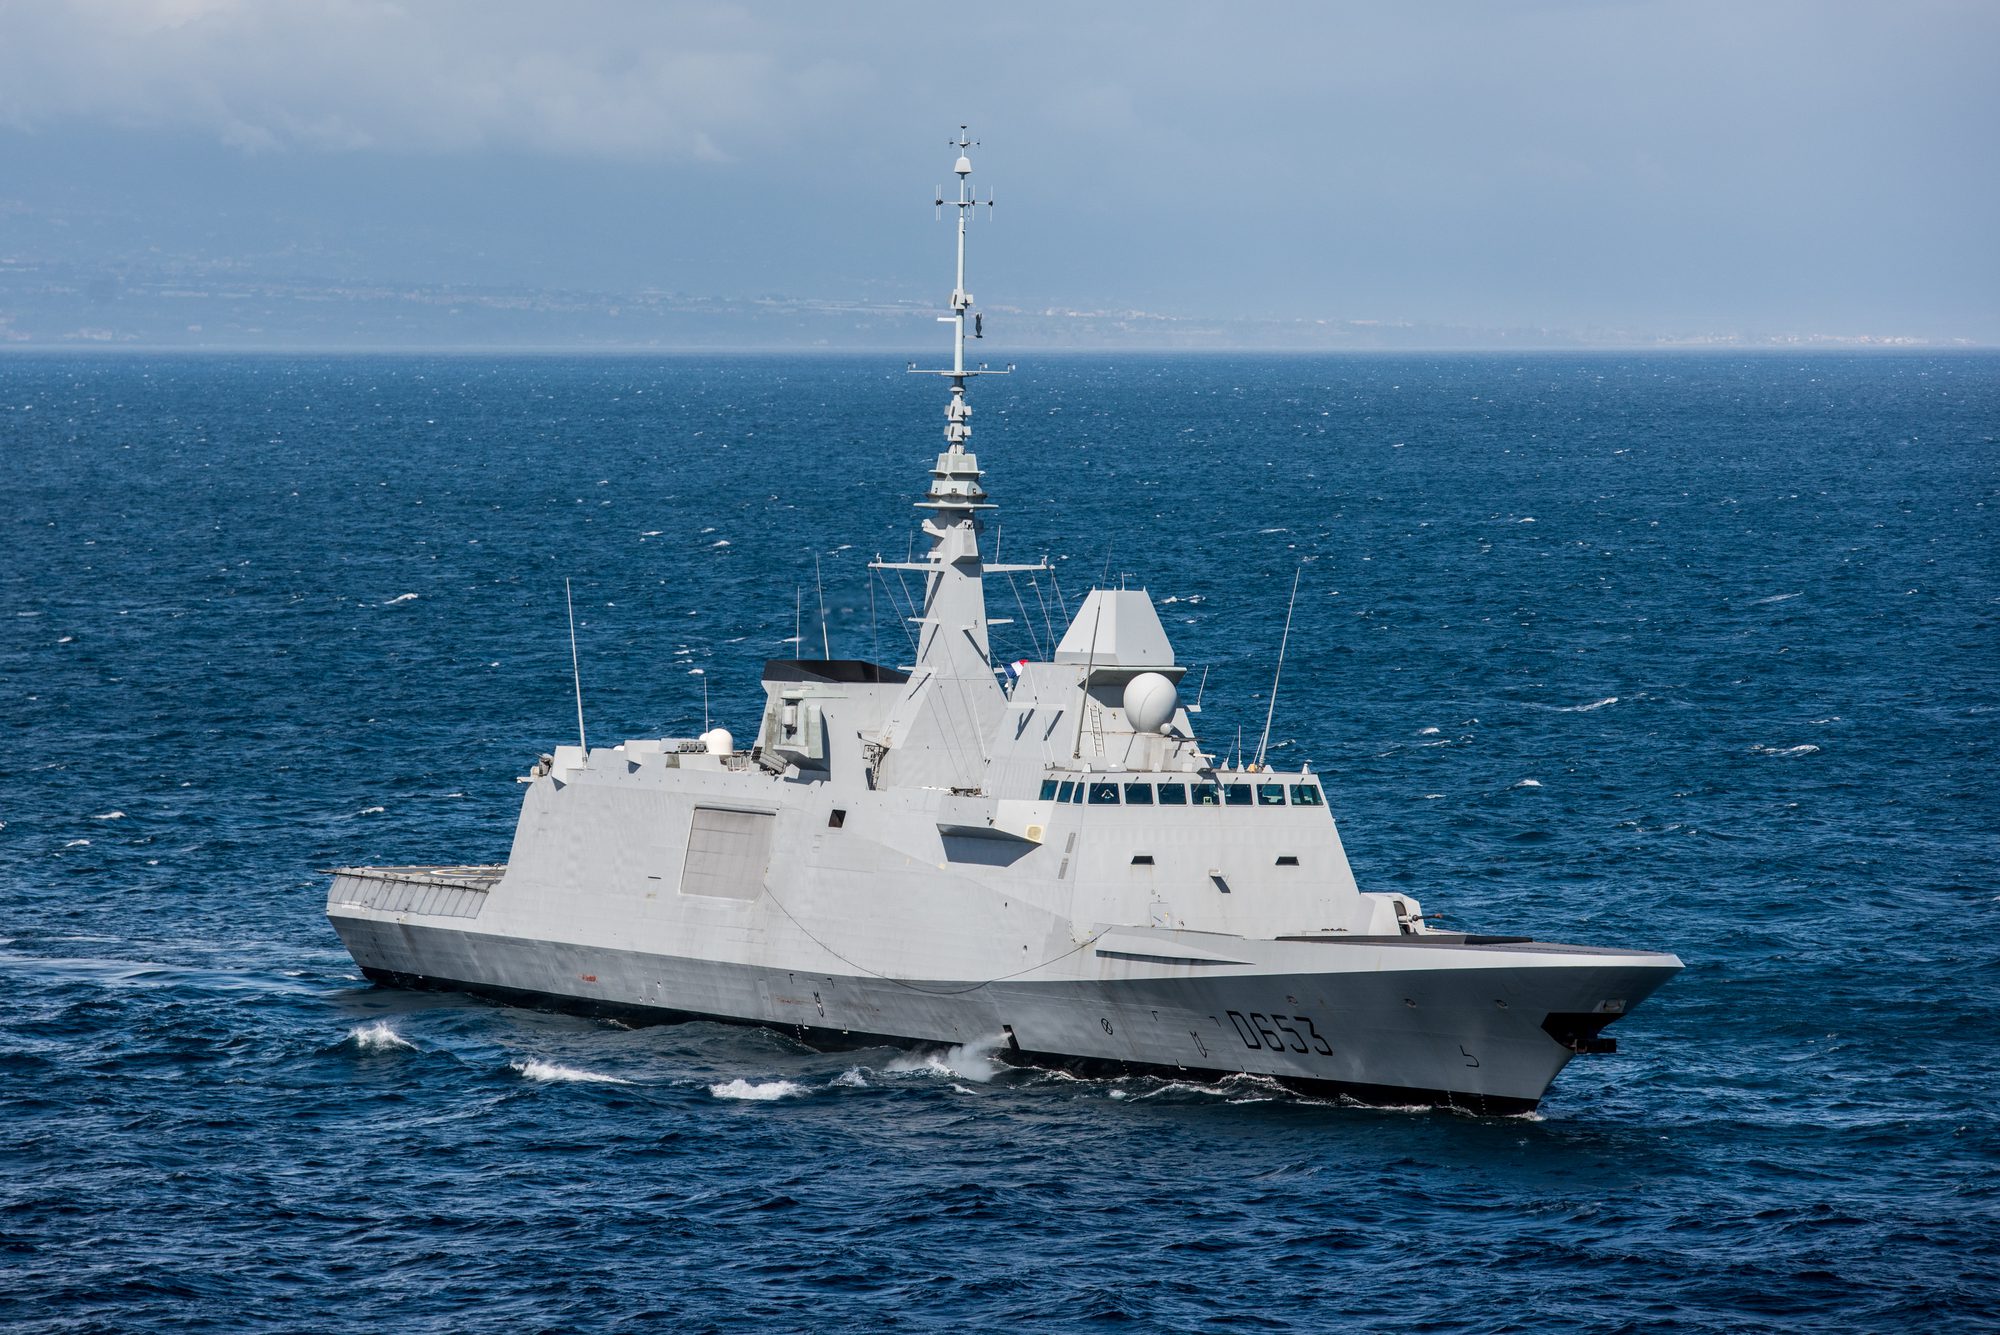 The French Navy frigate FREMM Languedoc. Photo courtesy Marine Nationale